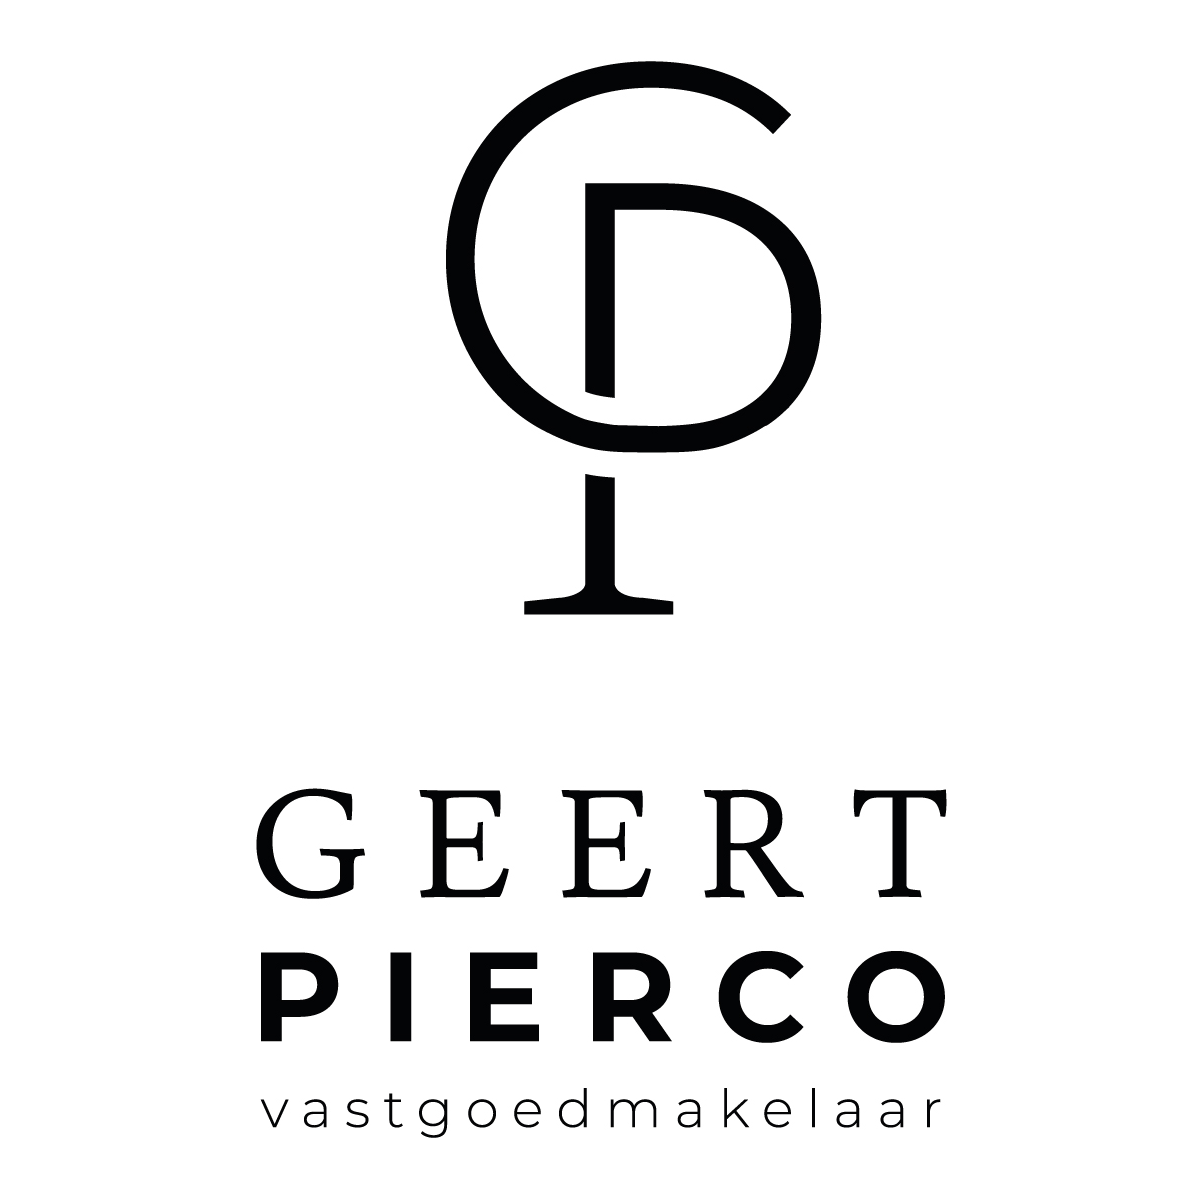 Geert Pierco Vastgoedmakelaar